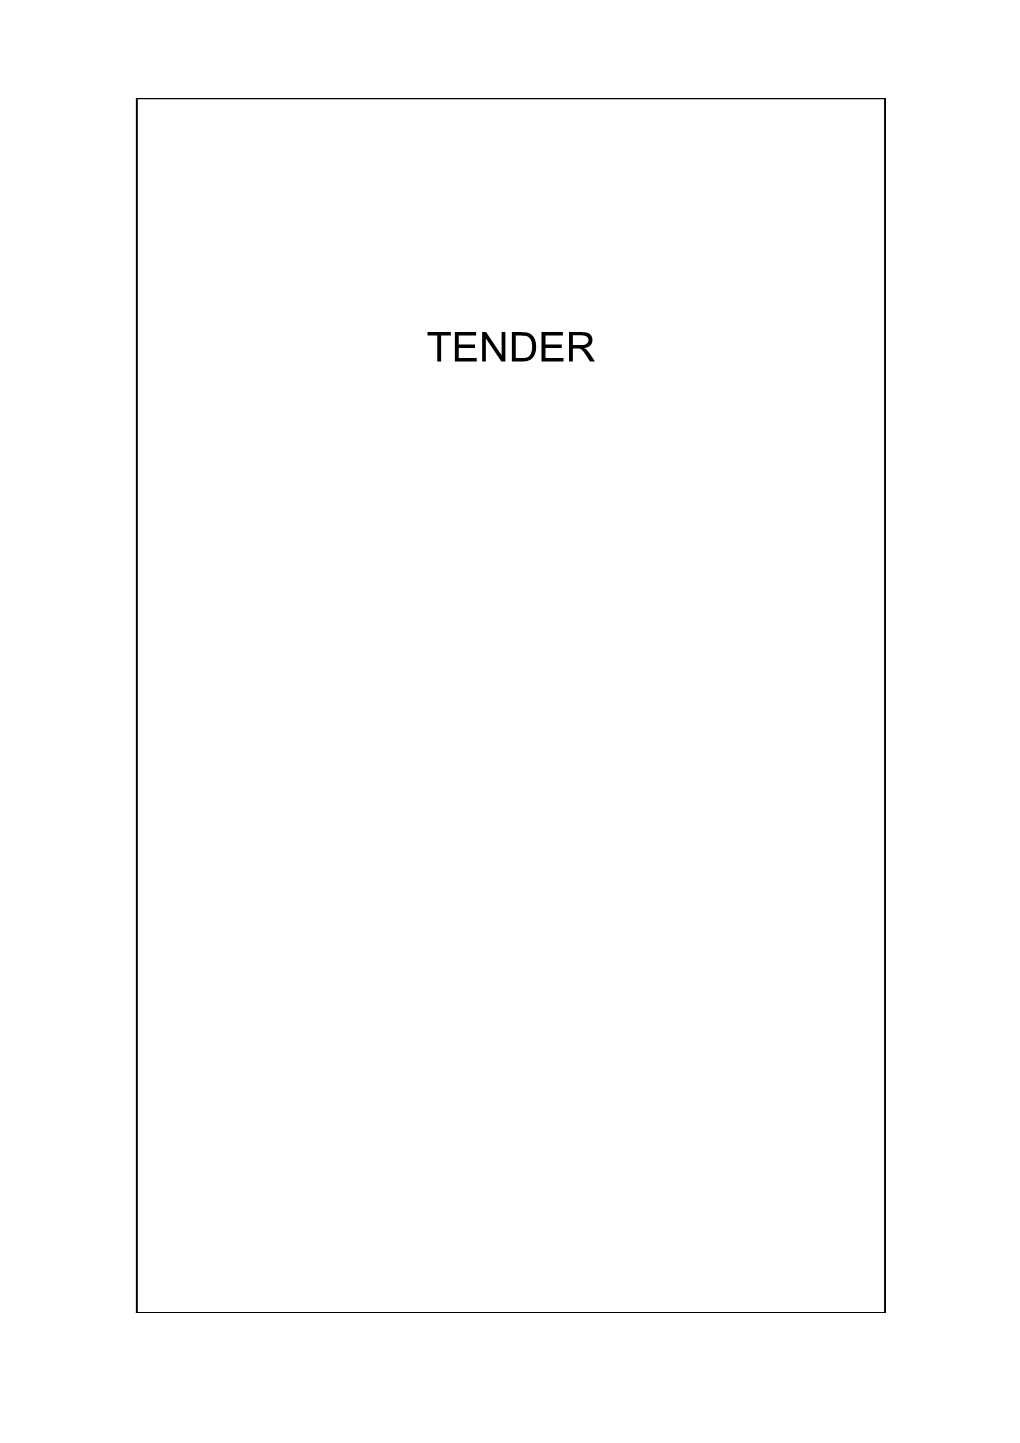 1 Tender Schedule 1 Tender Form